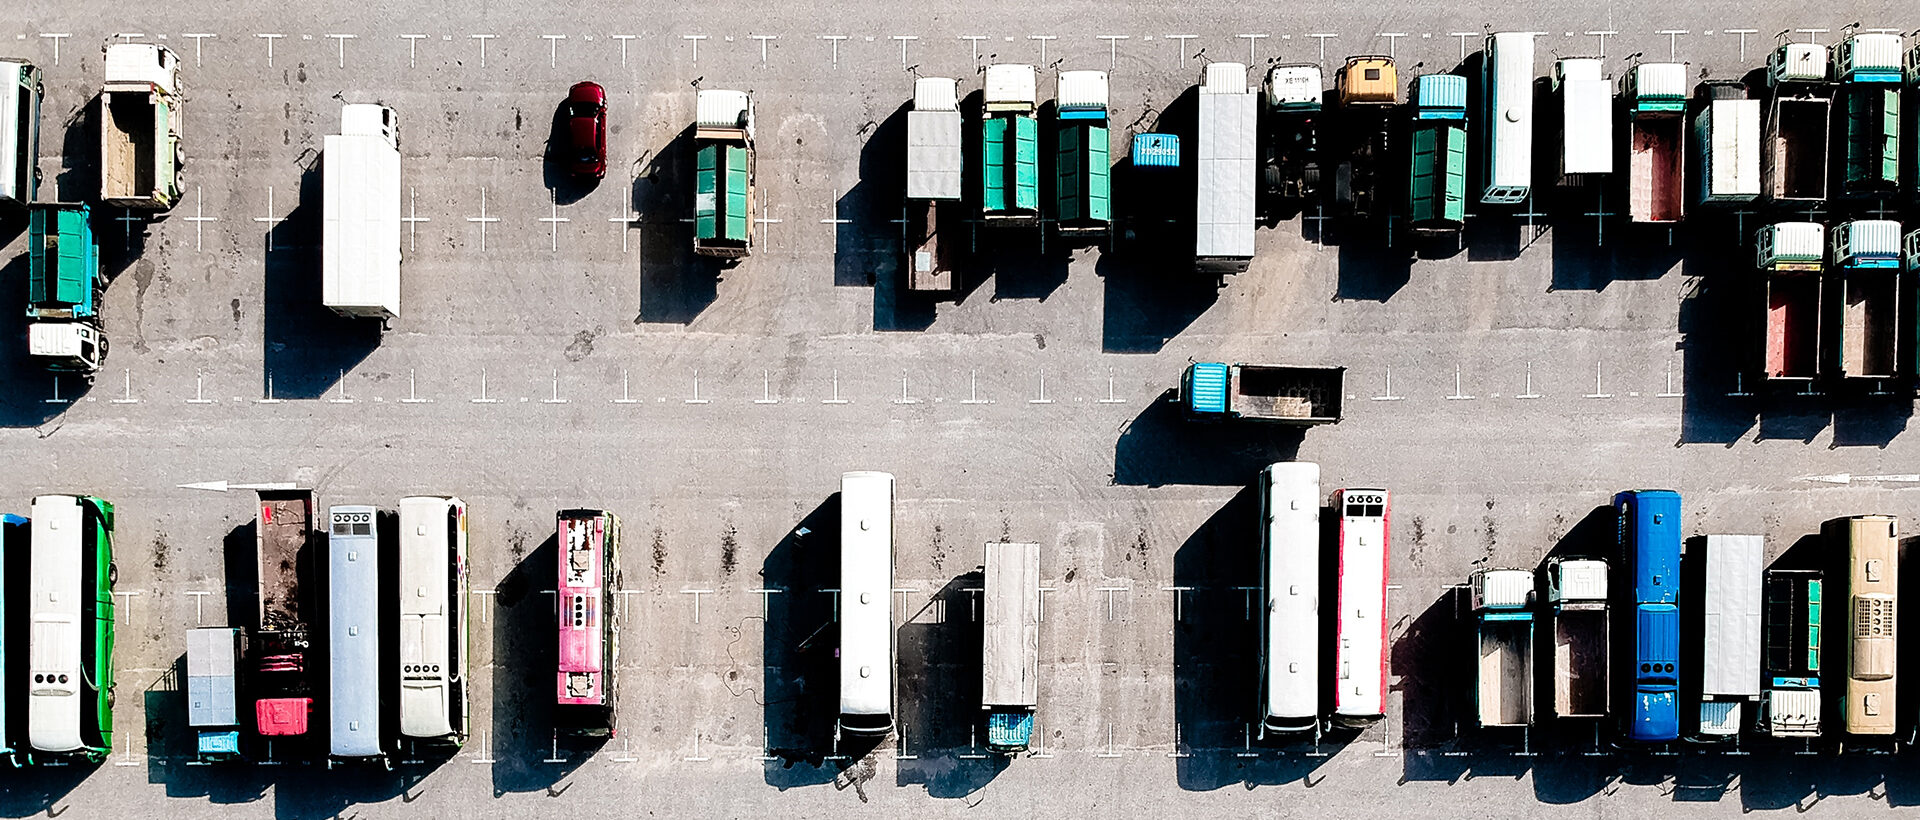 Lastwagen auf einem Parkplatz von oben fotografiert.